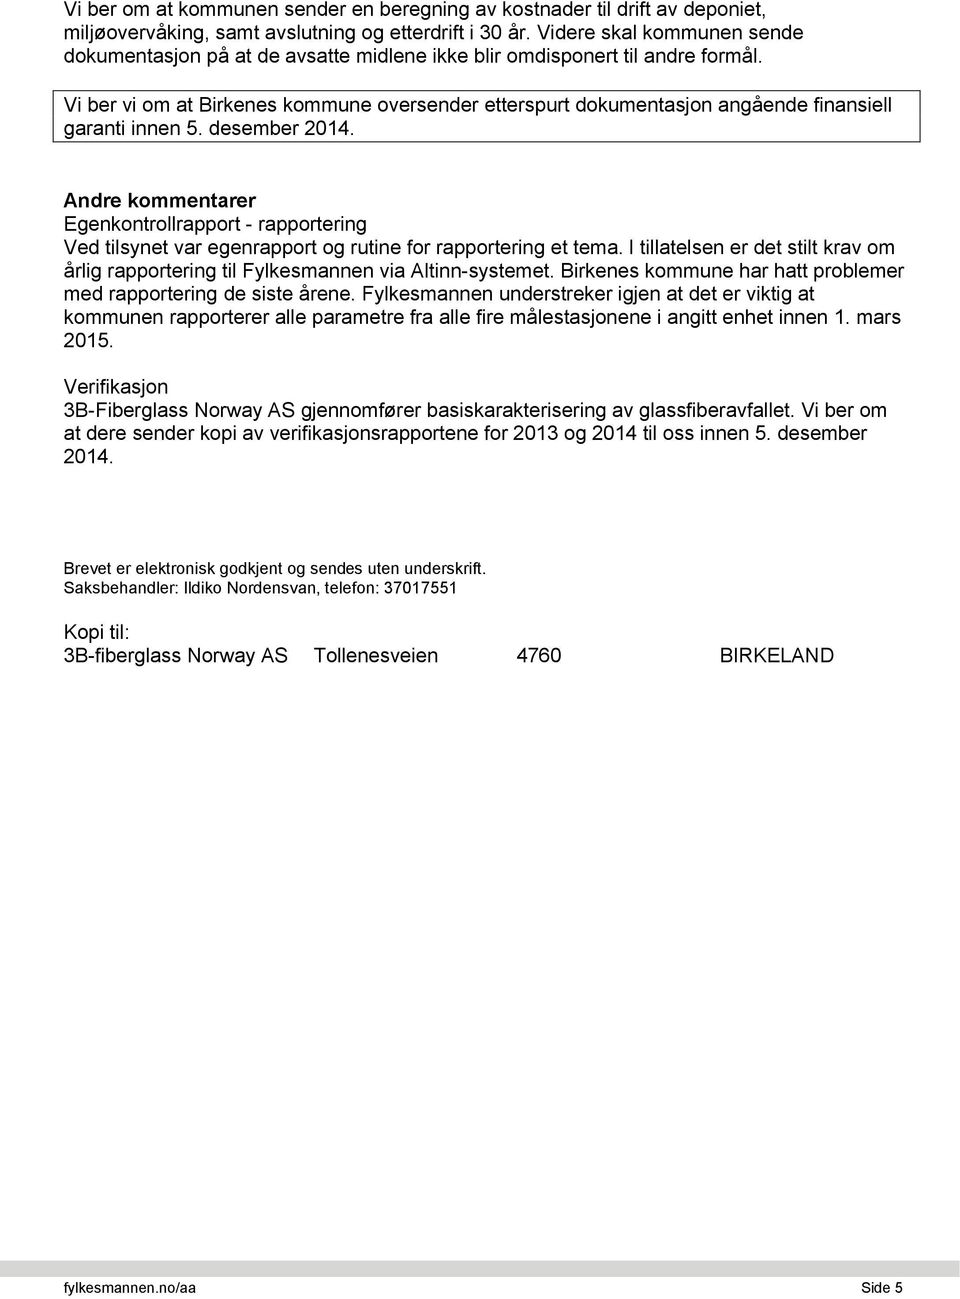 Vi ber vi om at Birkenes kommune oversender etterspurt dokumentasjon angående finansiell garanti innen 5. desember 2014.